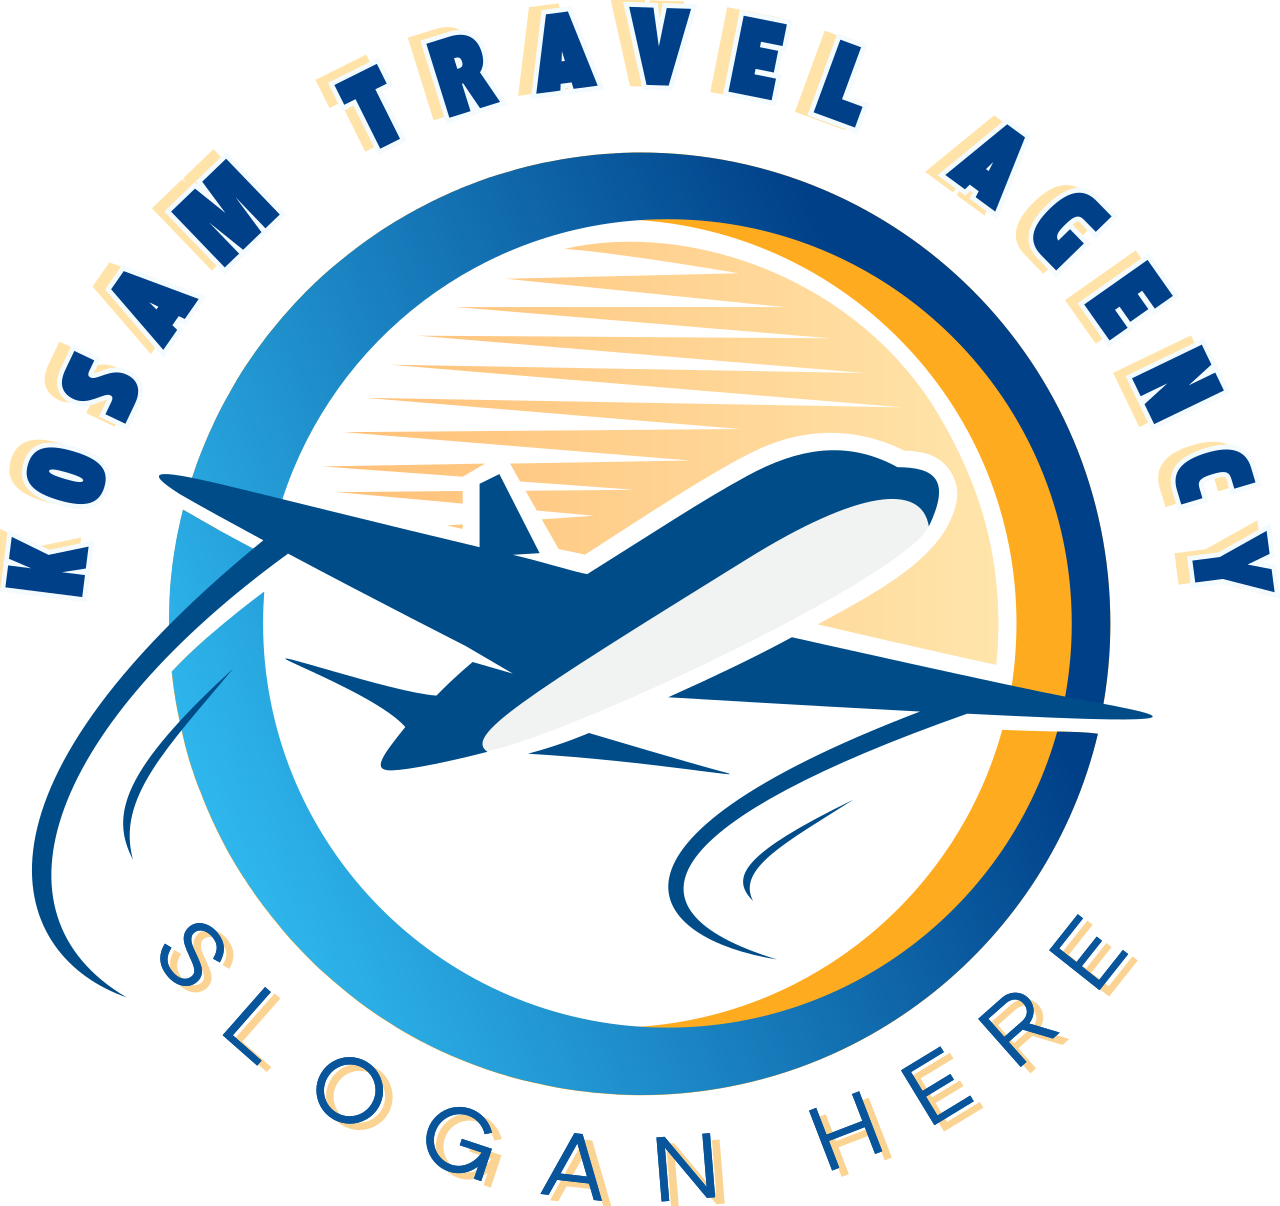 Kosam travel agency's logo